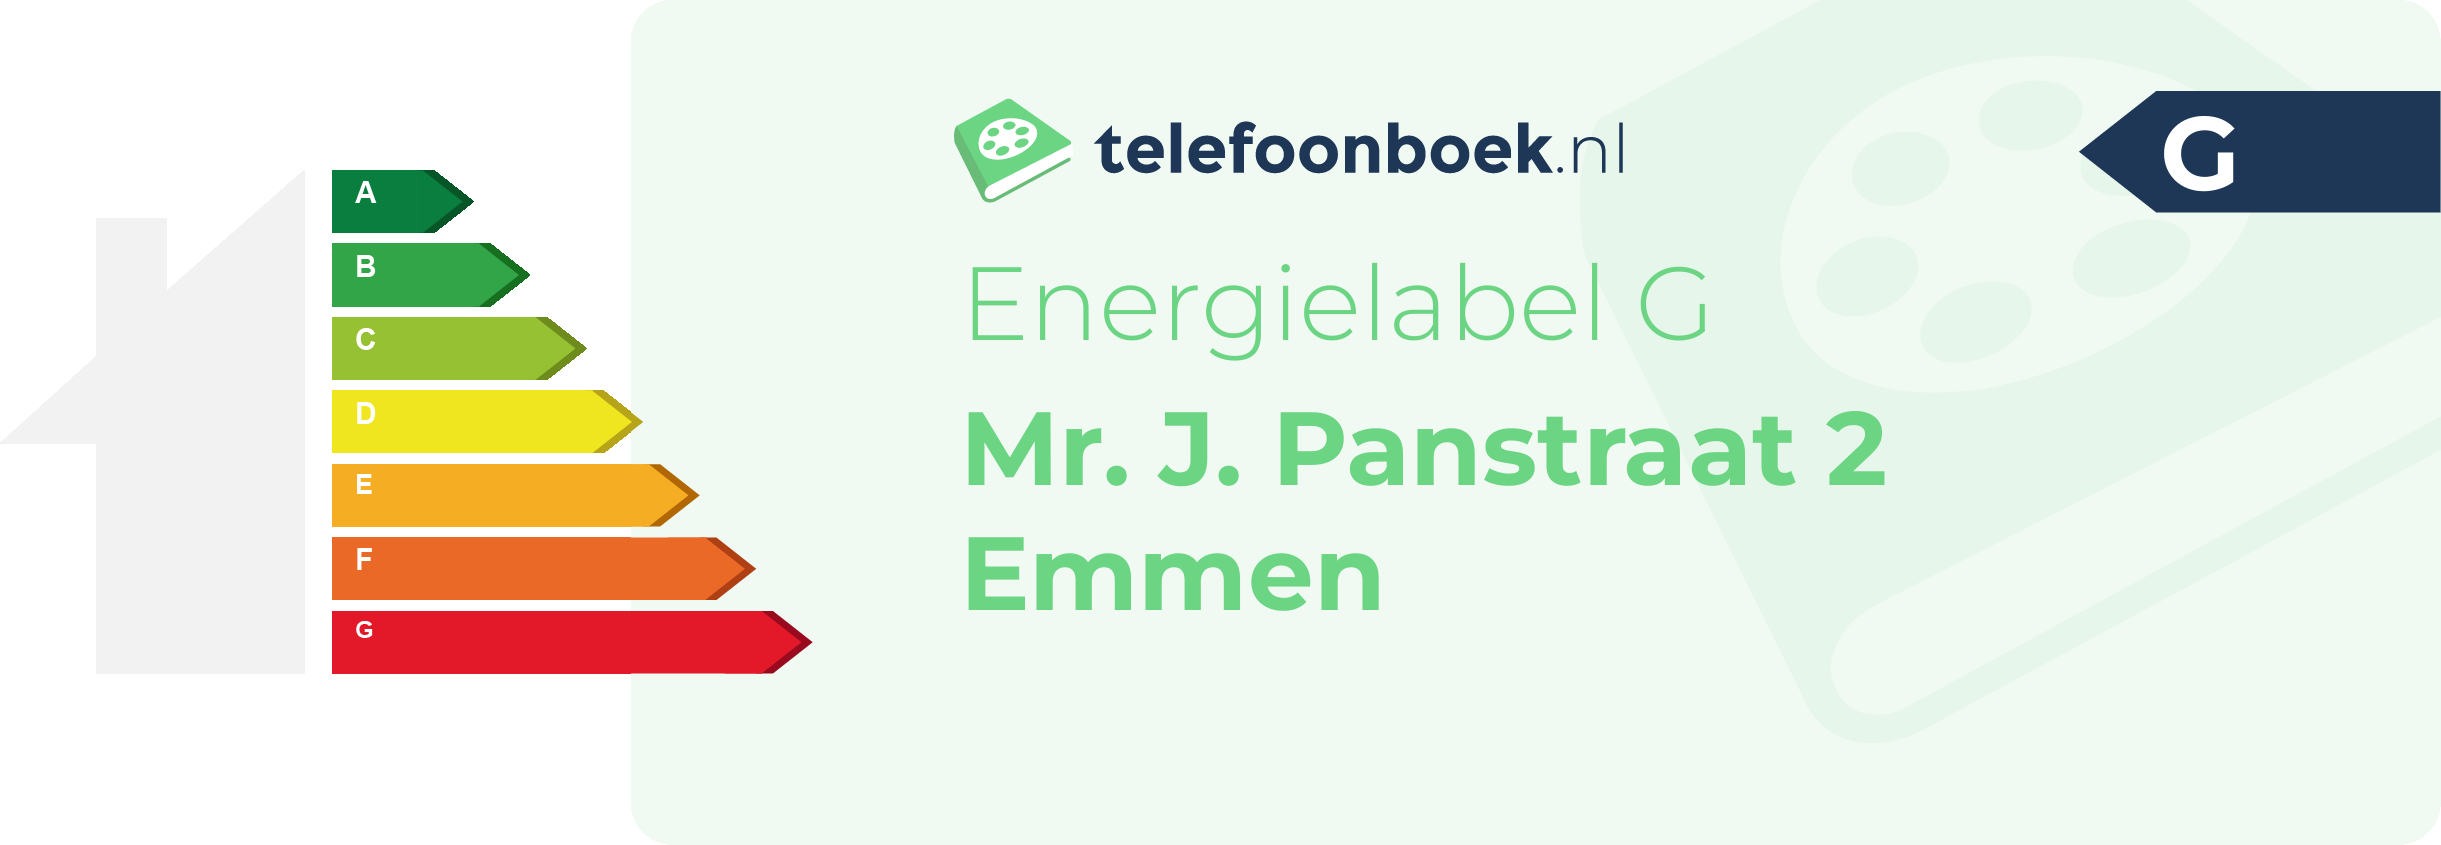 Energielabel Mr. J. Panstraat 2 Emmen